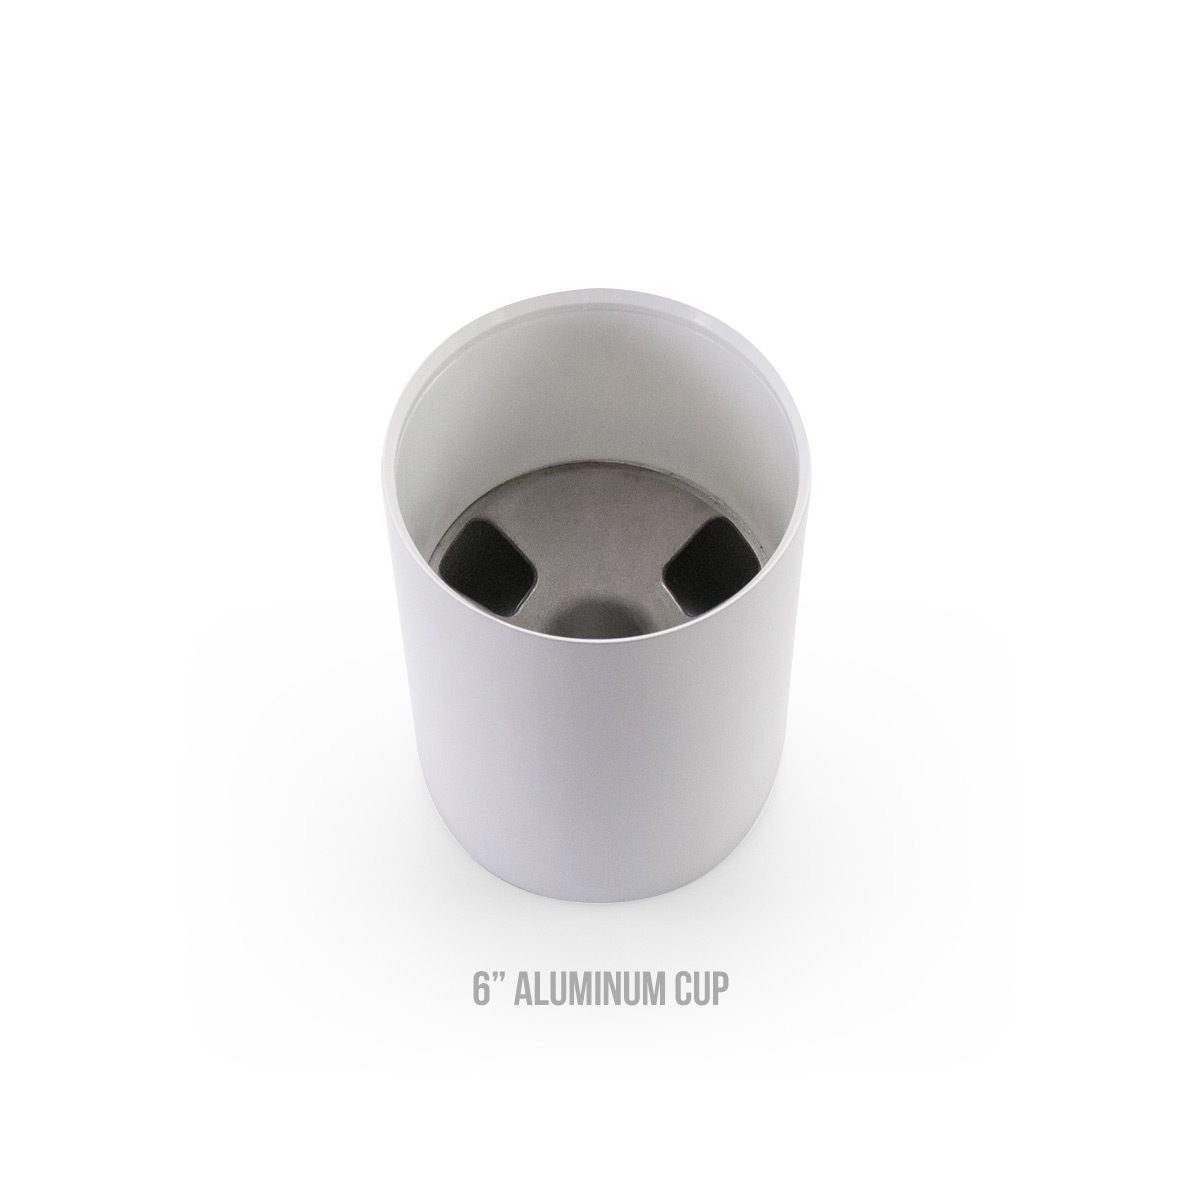 6 inch aluminum cup